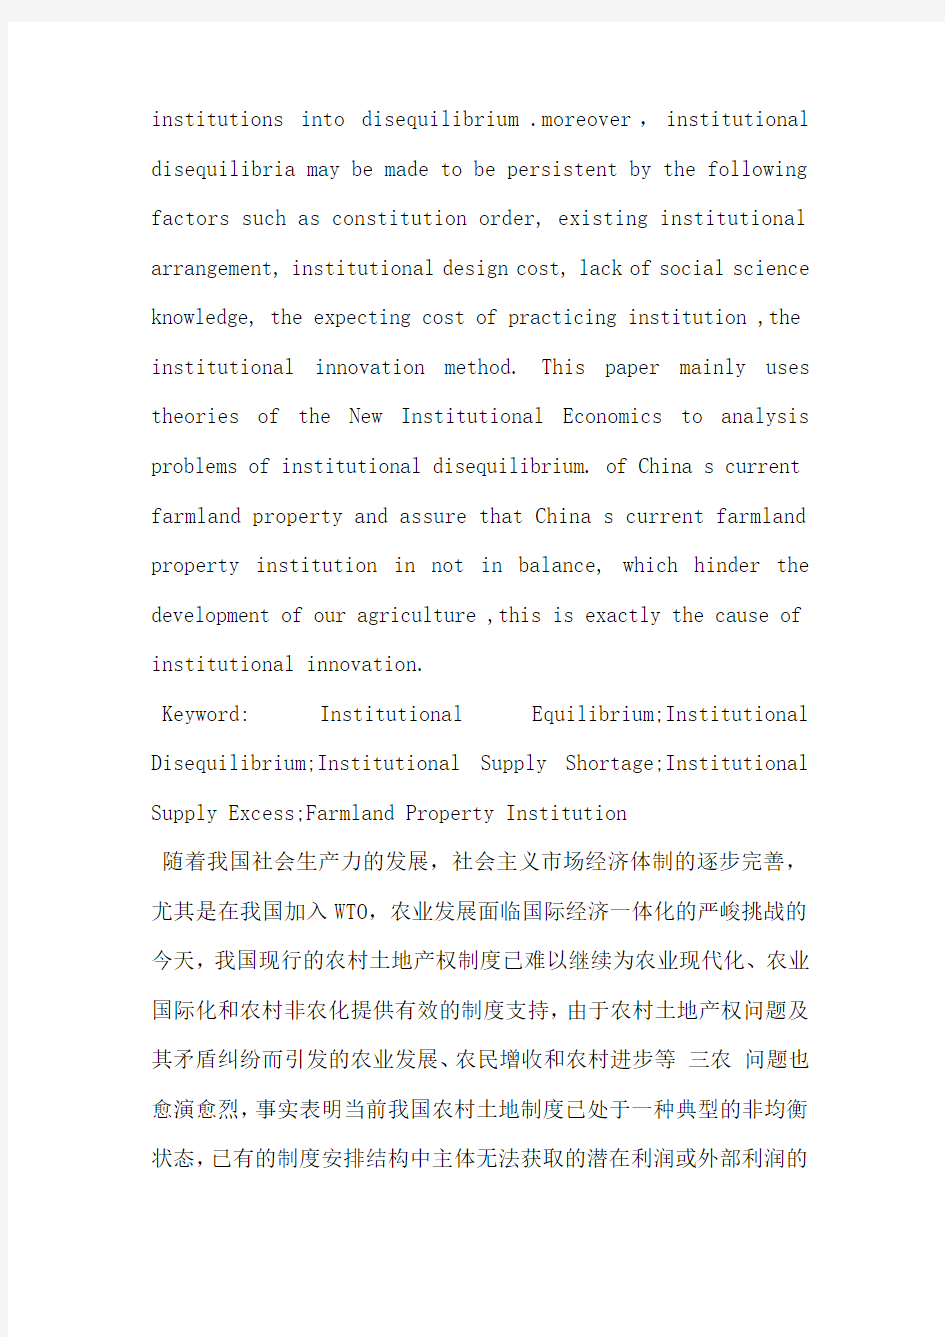 中国现行农村土地产权制度非均衡性分析